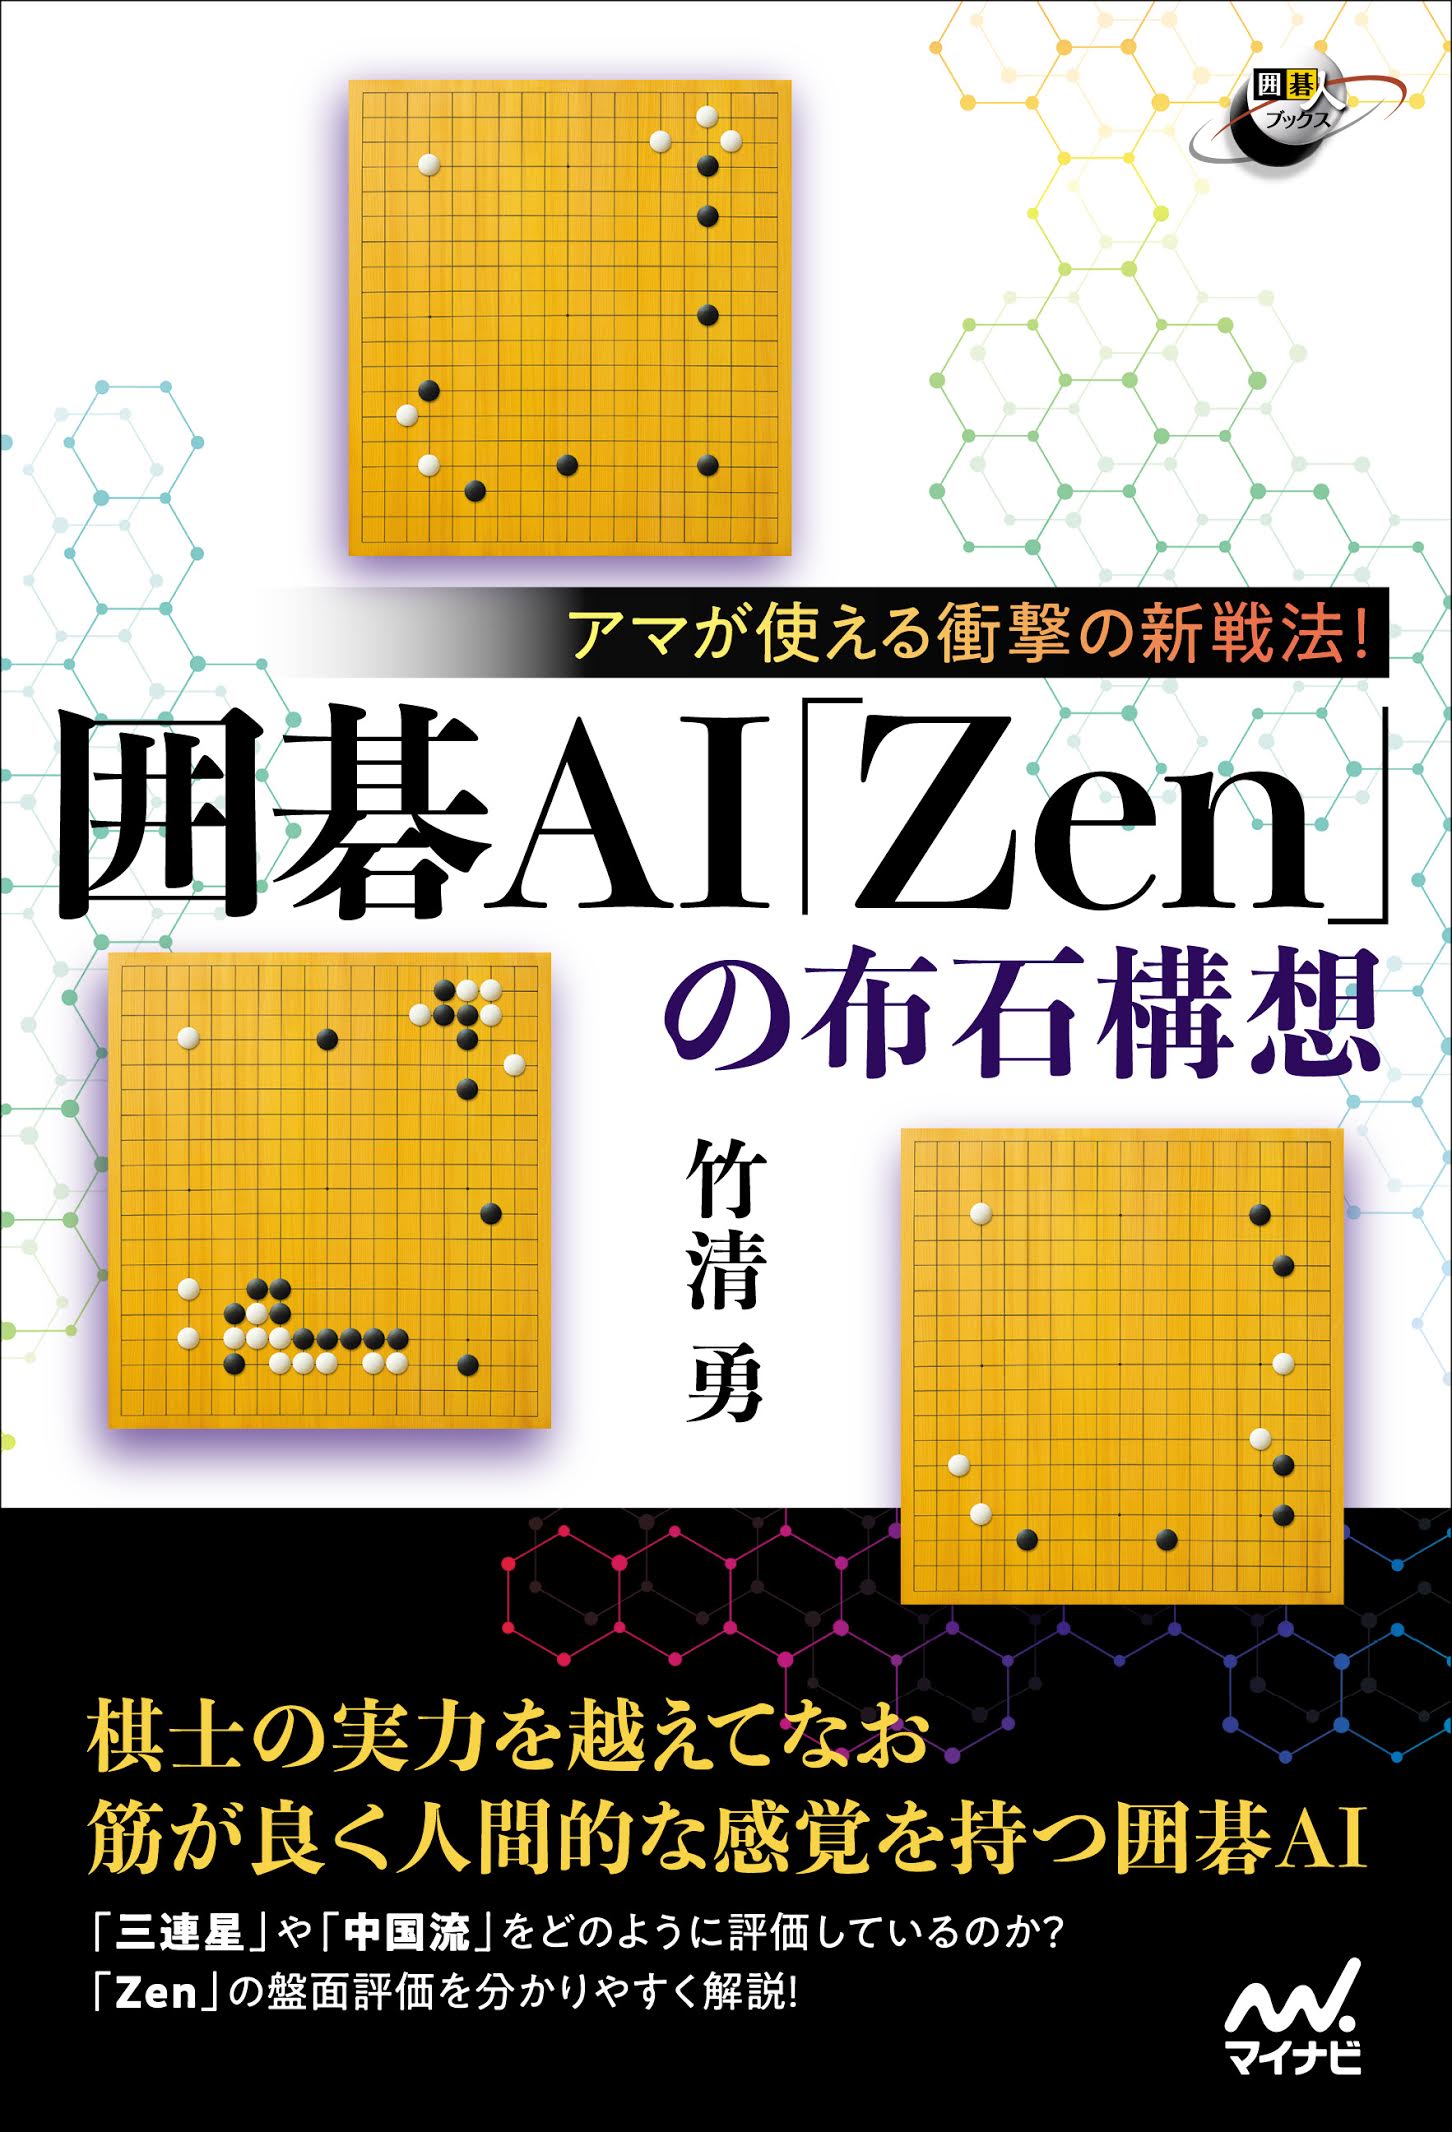 アマが使える衝撃の新戦法 囲碁ai Zen の布石構想 新感覚の囲碁ai本 978store